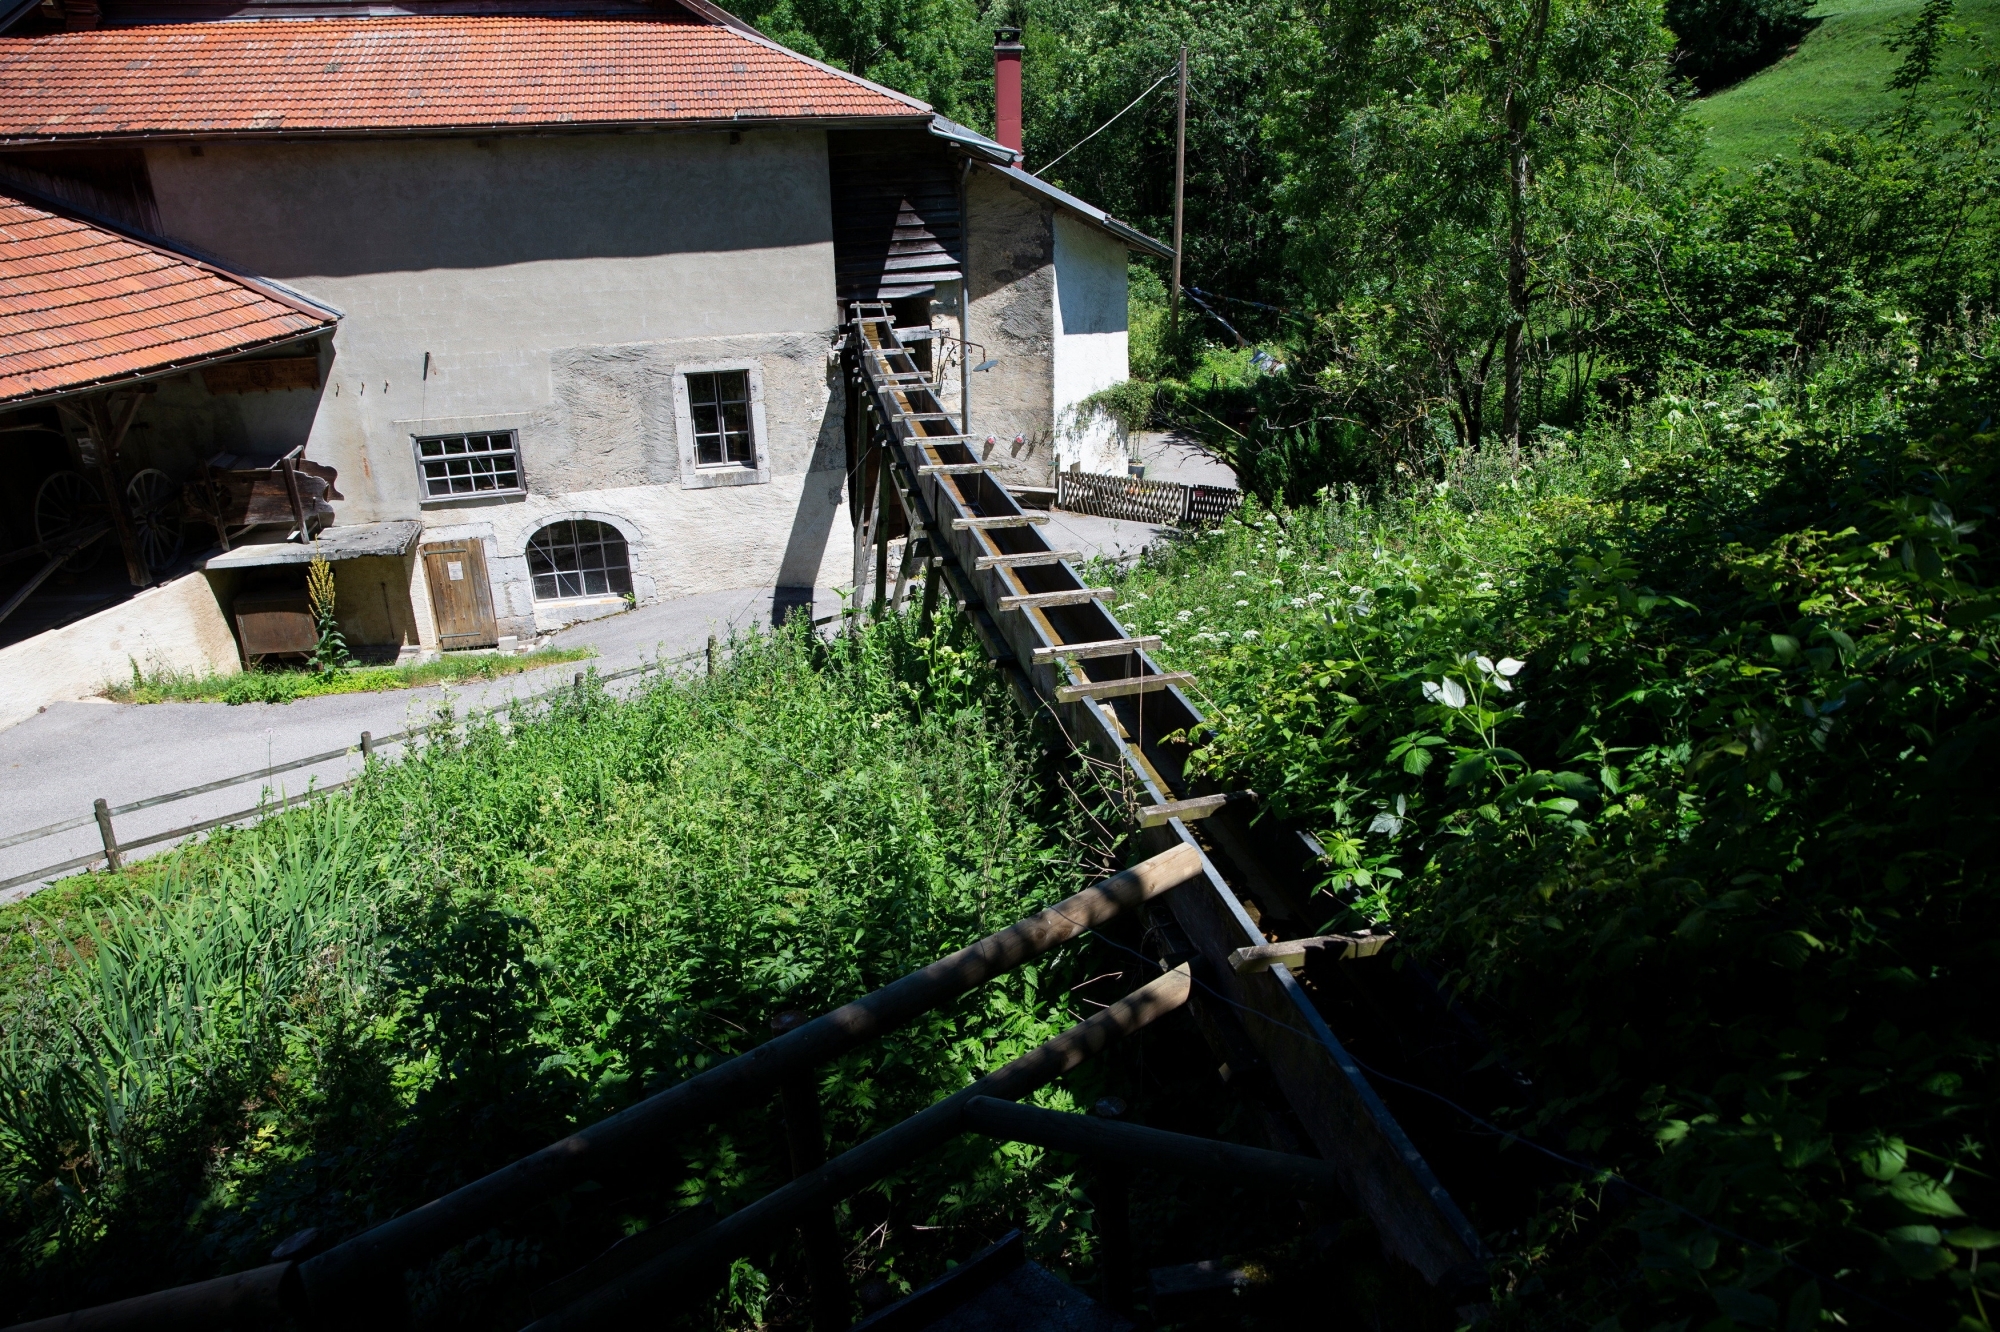 Le Moulin de Saint-George est riche en découvertes avec sa roue à augets, ses scies et son musée.